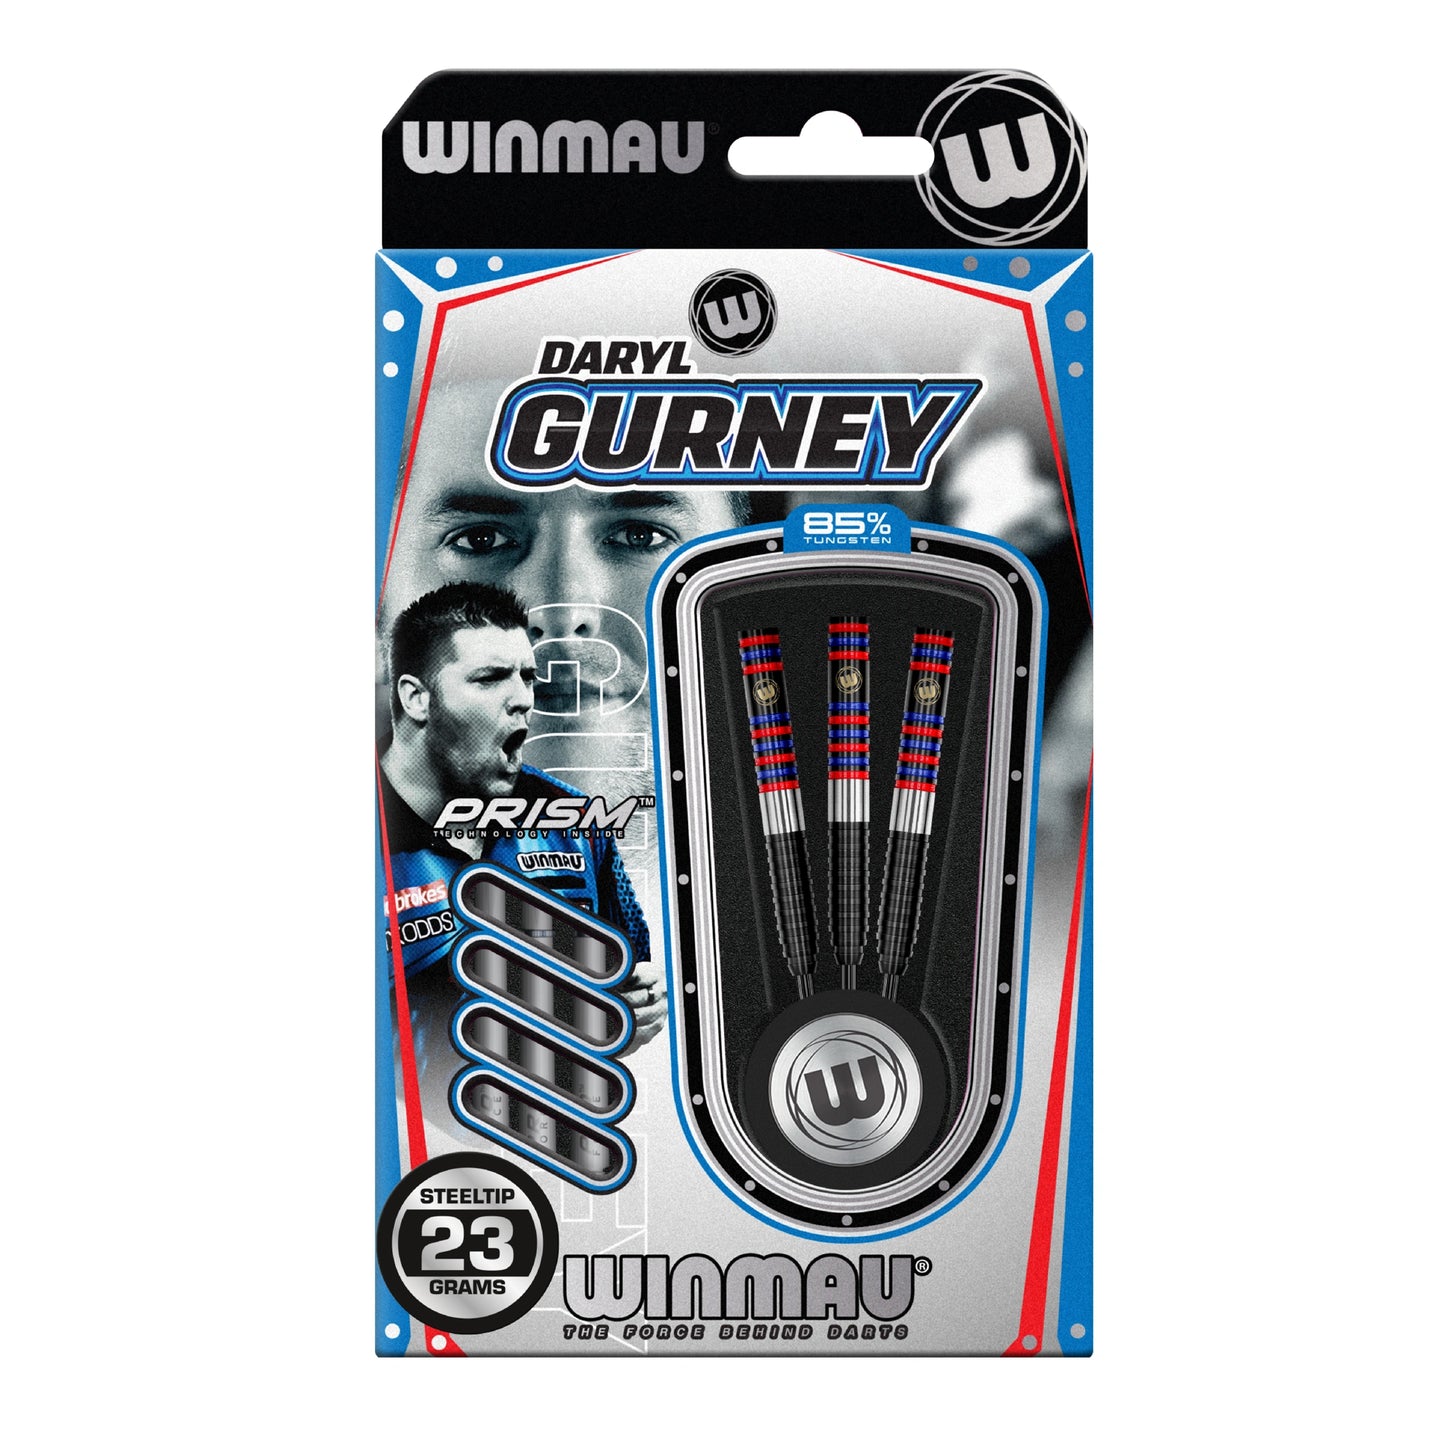 Winmau Daryl Gurney 85% Tungsten Darts 23G